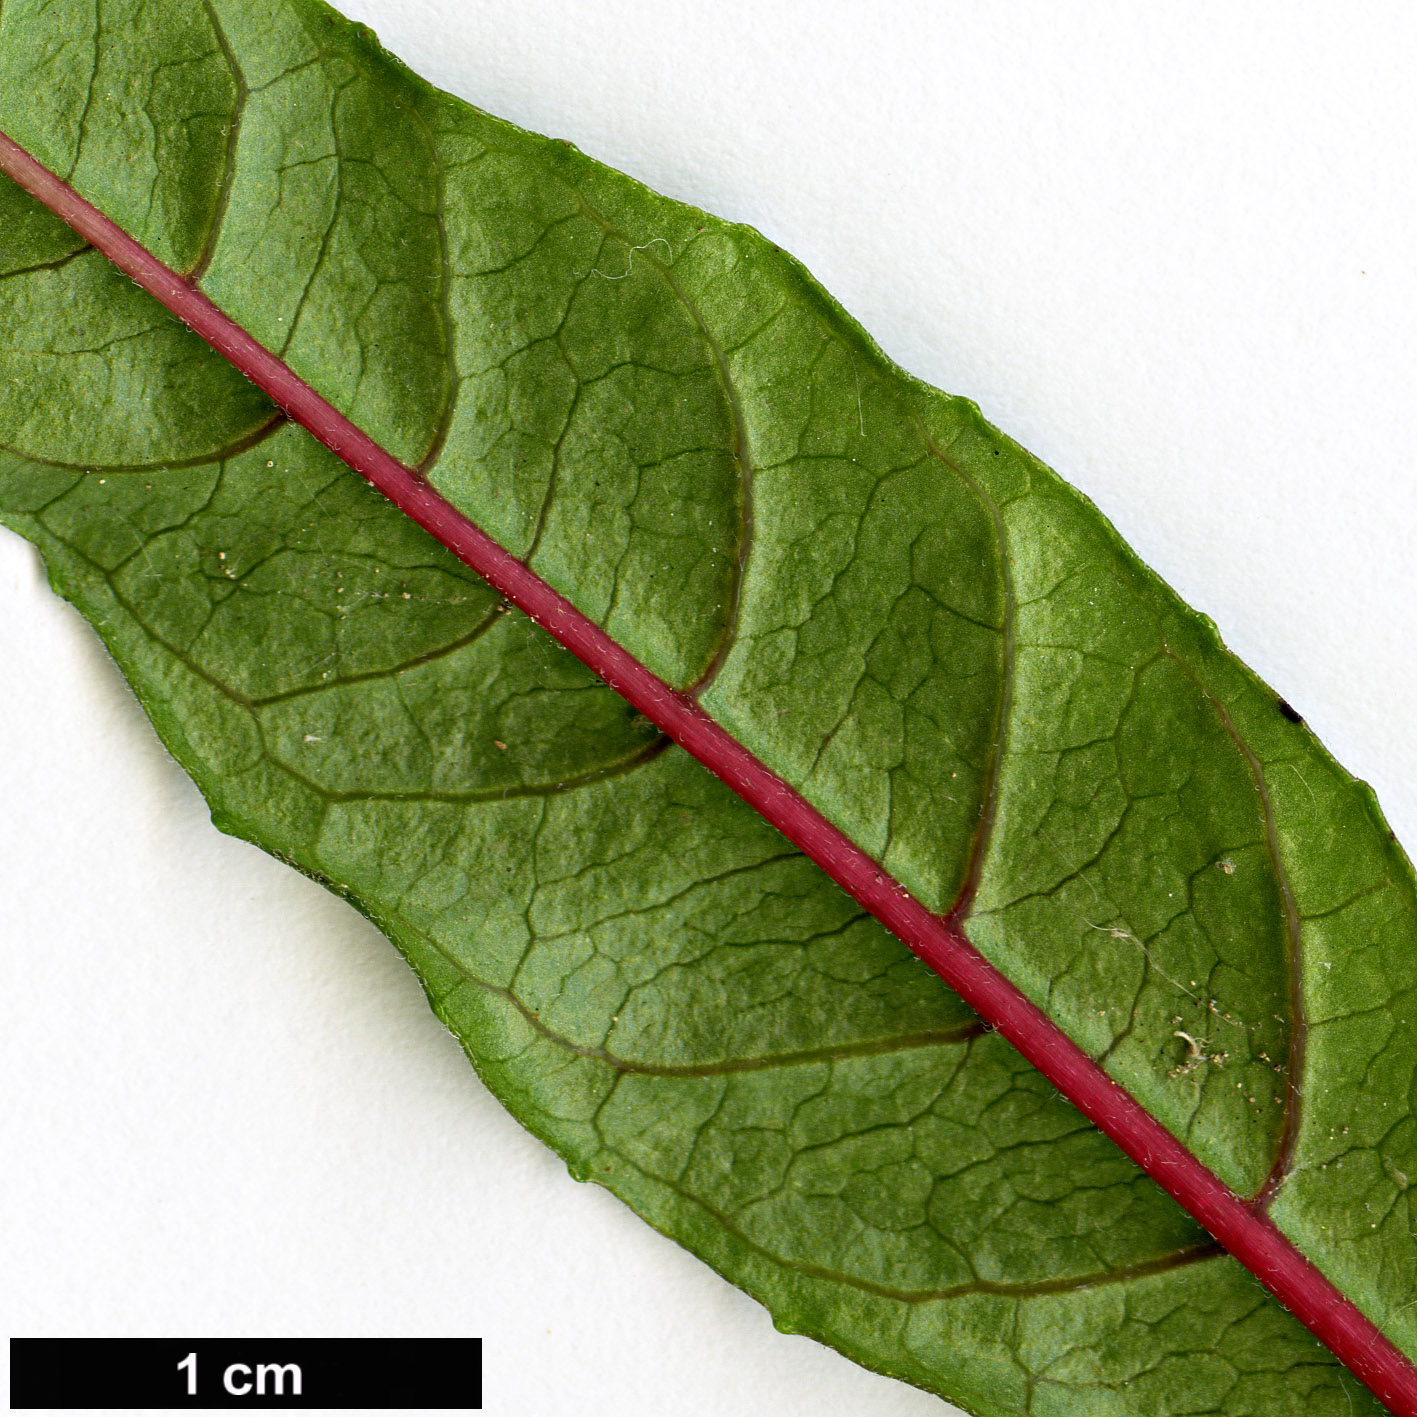 High resolution image: Family: Onagraceae - Genus: Fuchsia - Taxon: petiolaris